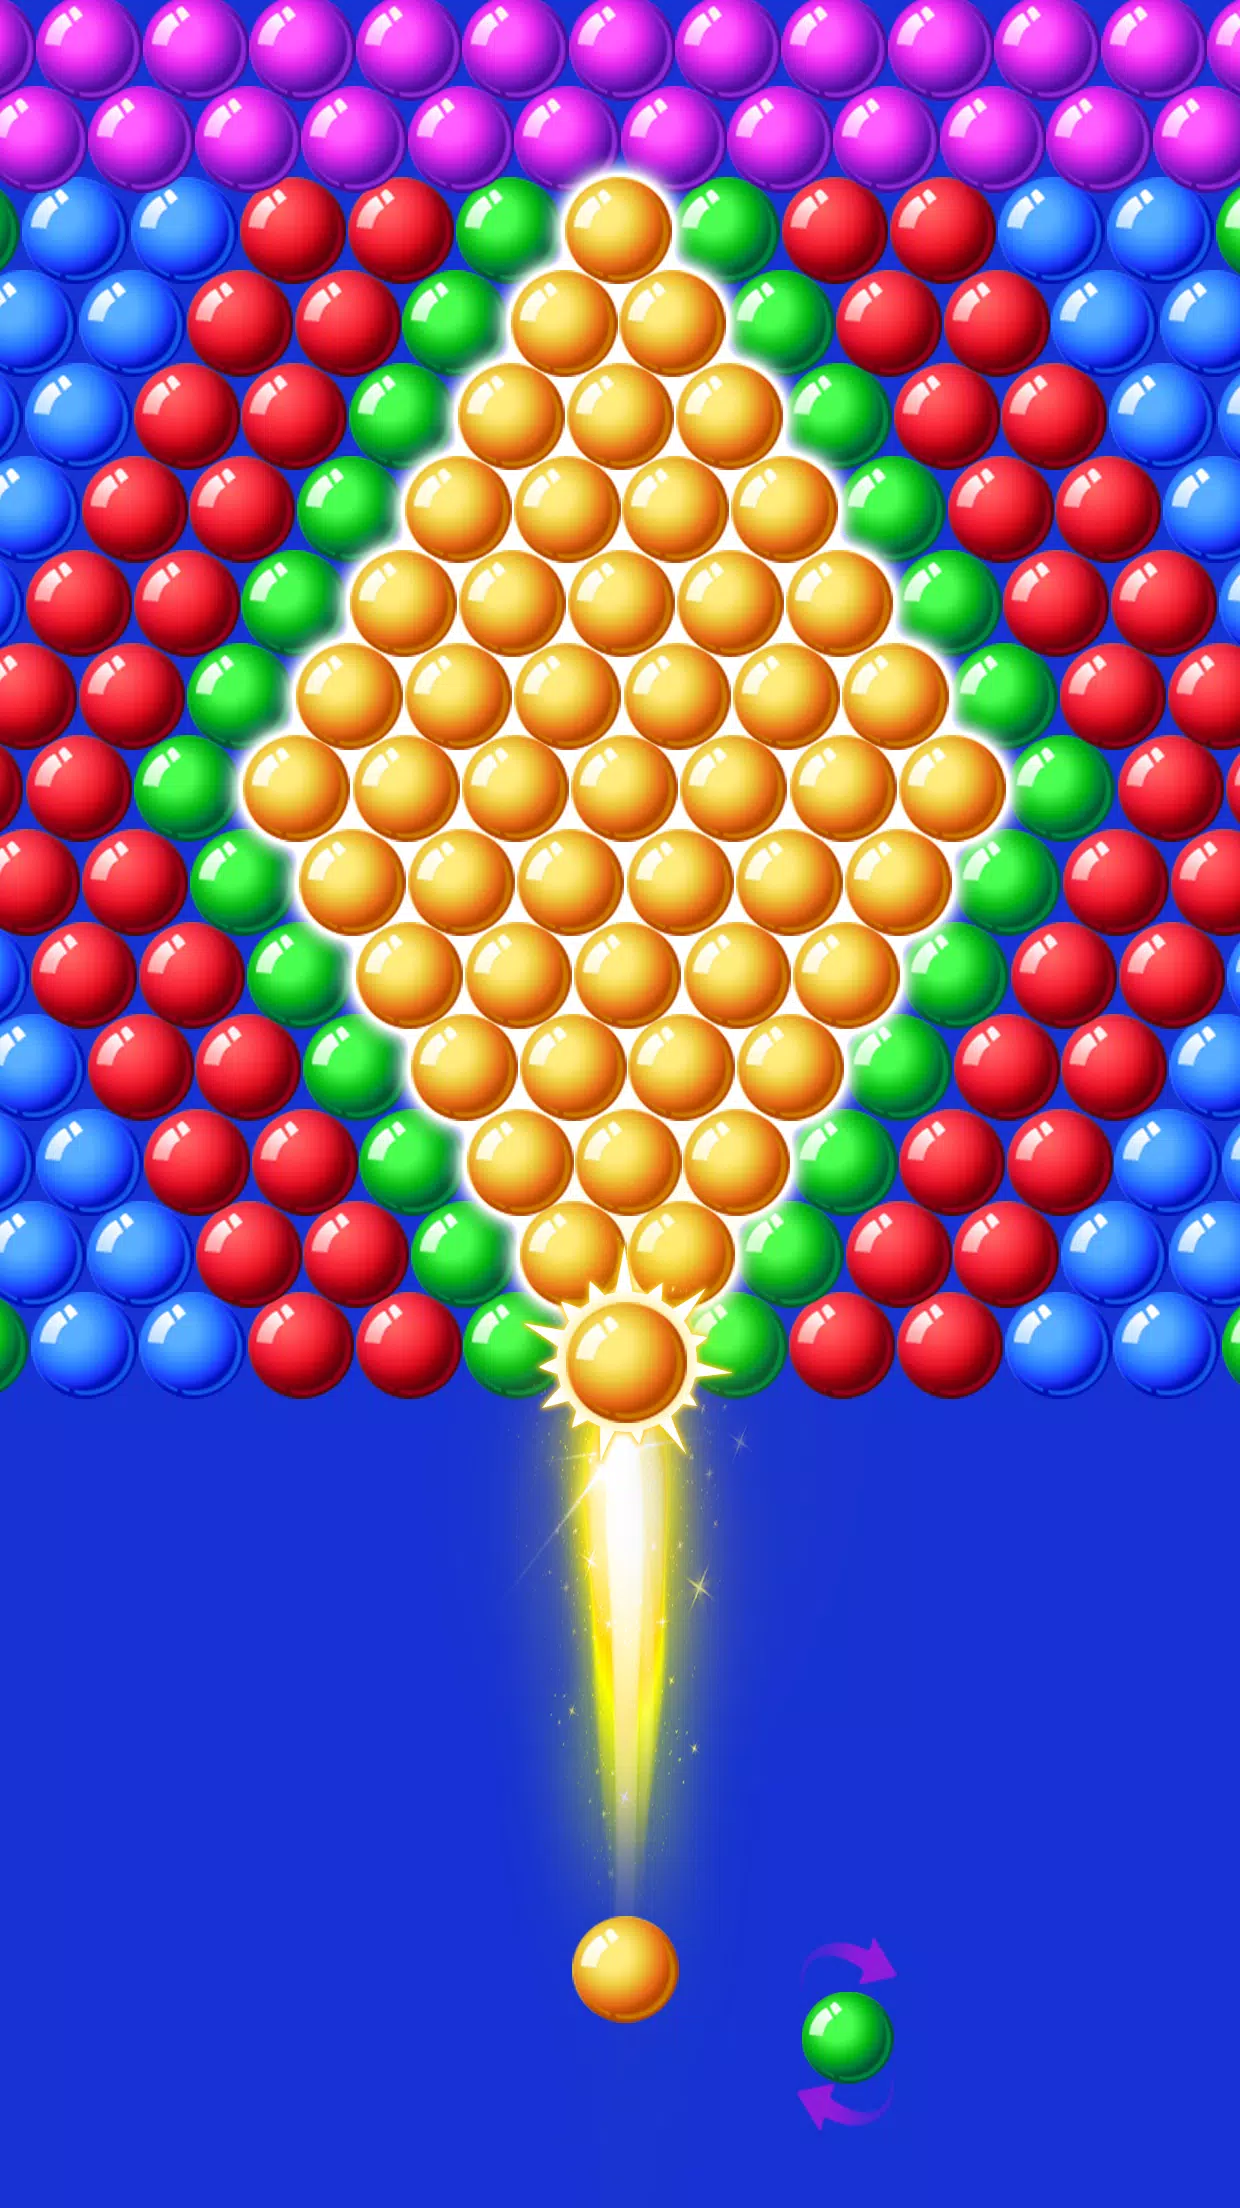 Bubble Shooter Rainbow para Android - Baixe o APK na Uptodown